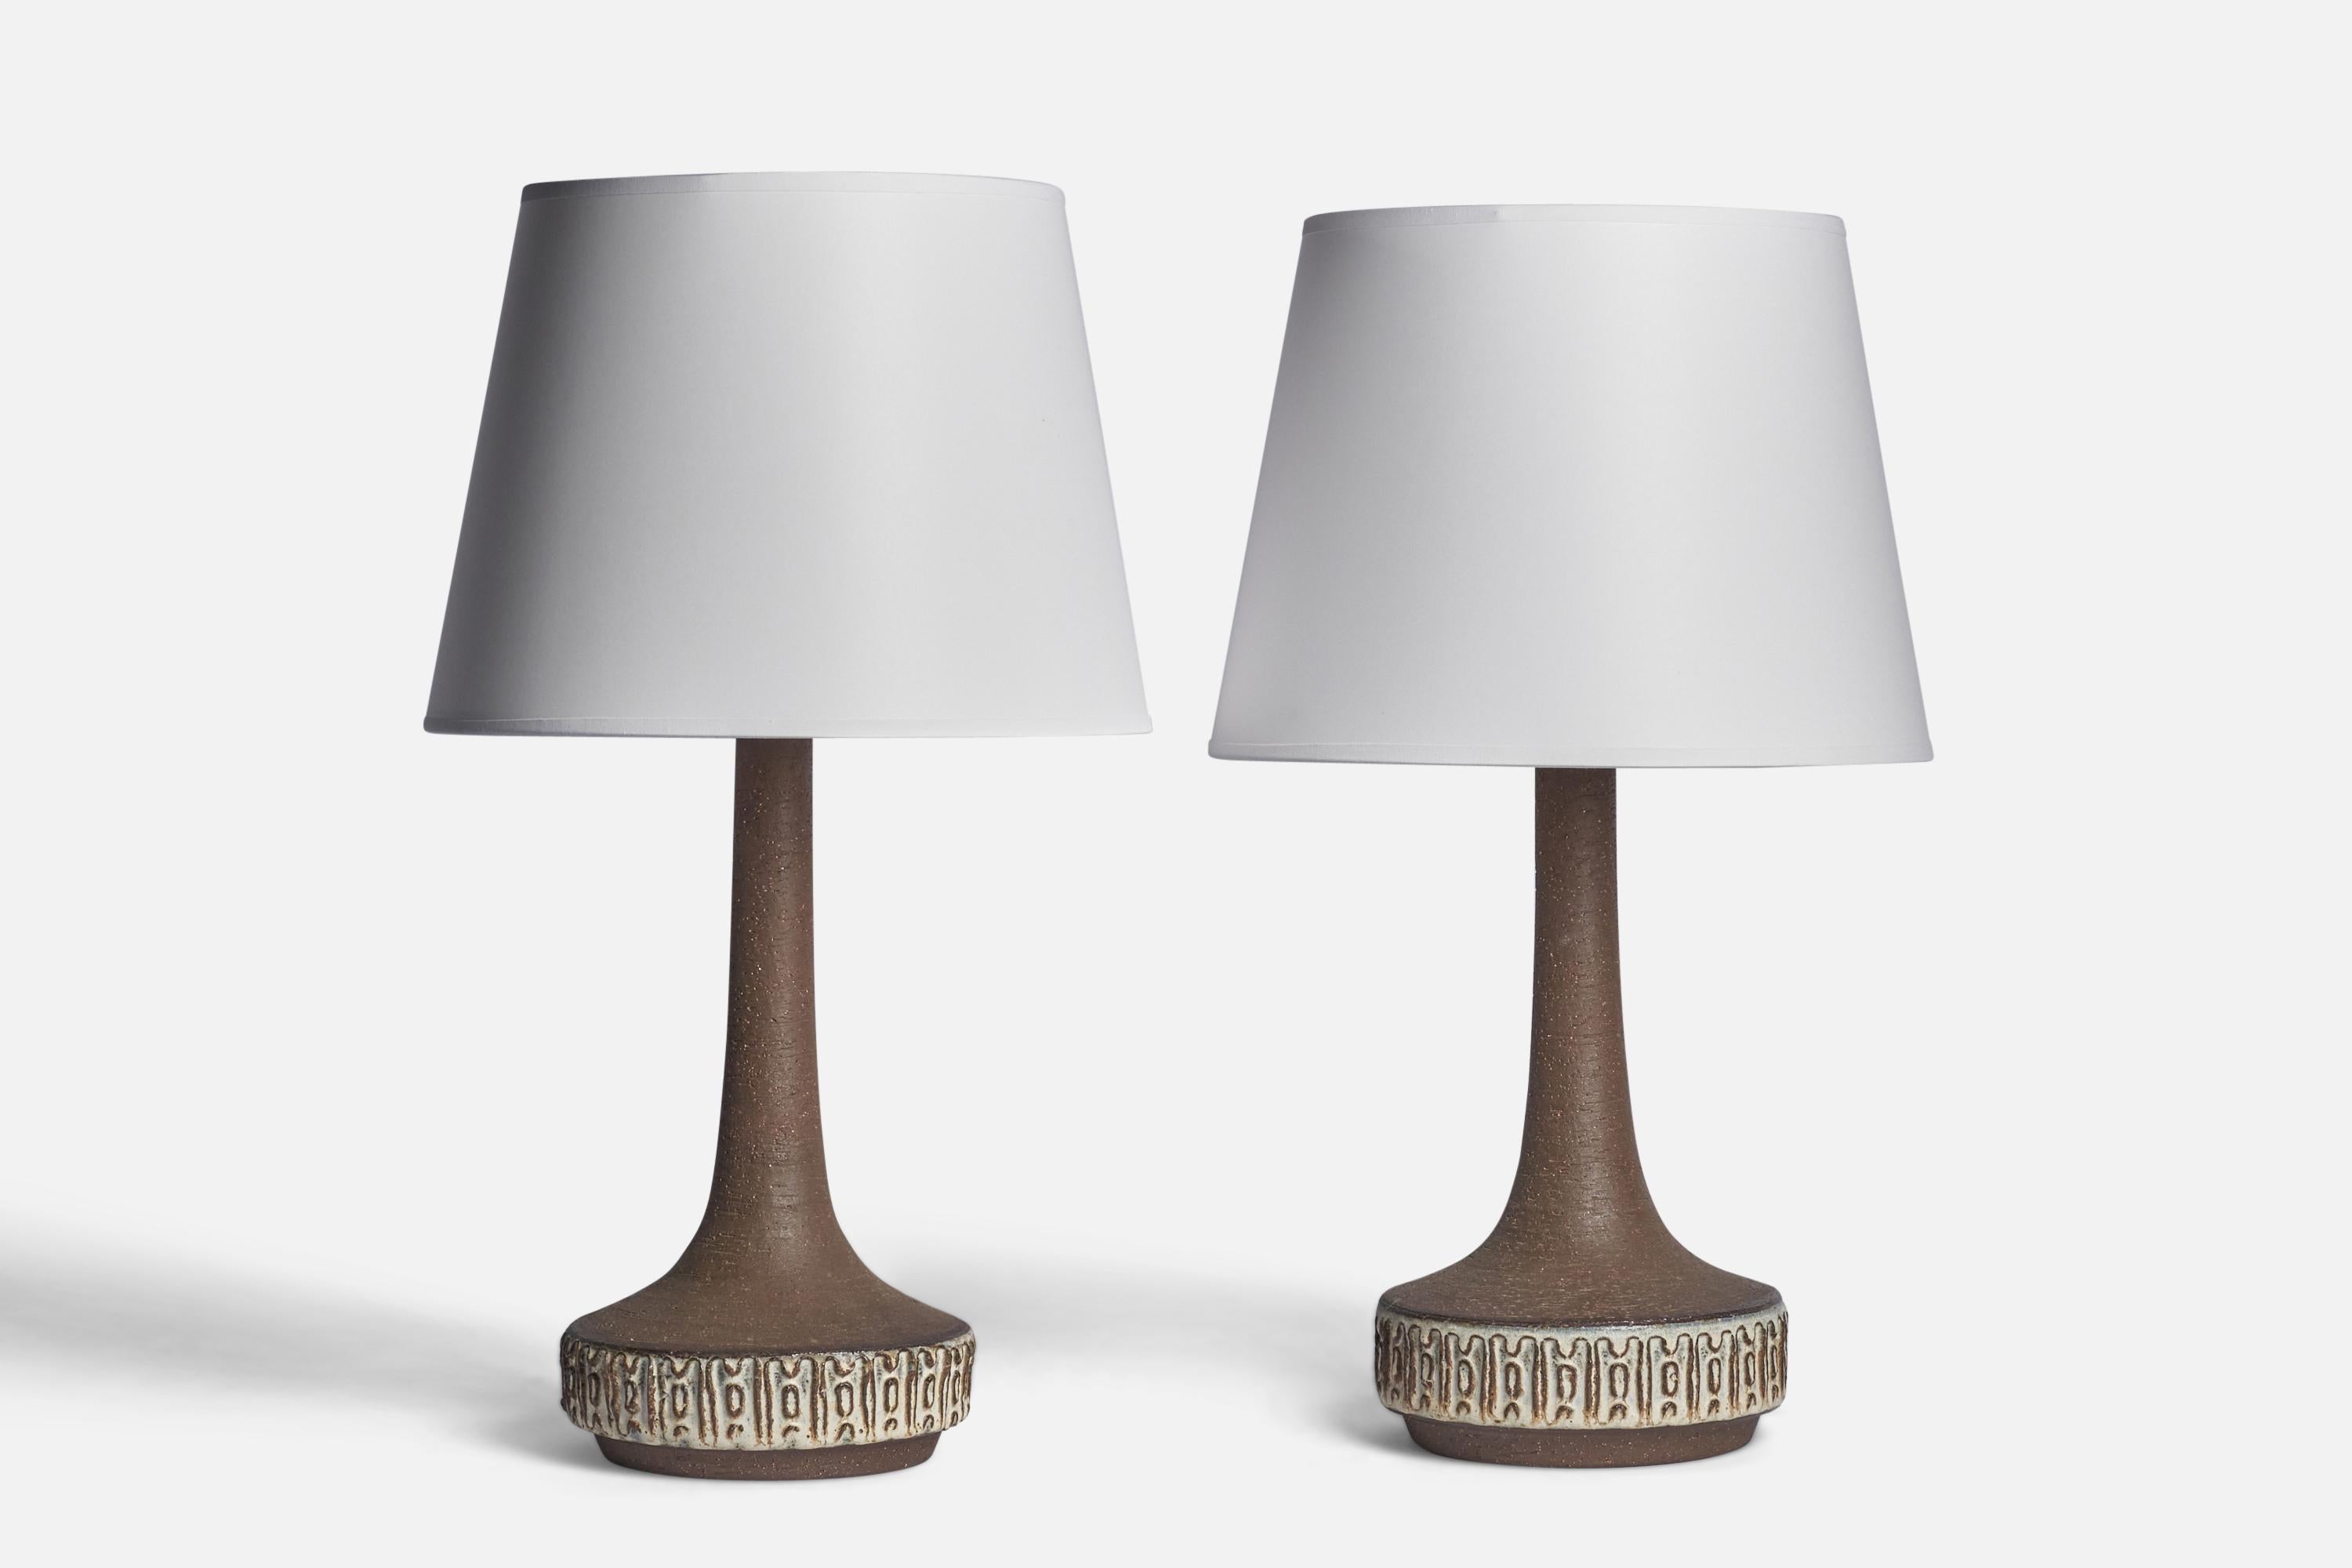 Ein Paar braun und hellgrau glasierte Steingut-Tischlampen, entworfen und hergestellt von Michael Andersen, Bornholm, Dänemark, 1960er Jahre.

Abmessungen der Lampe (Zoll): 15,5